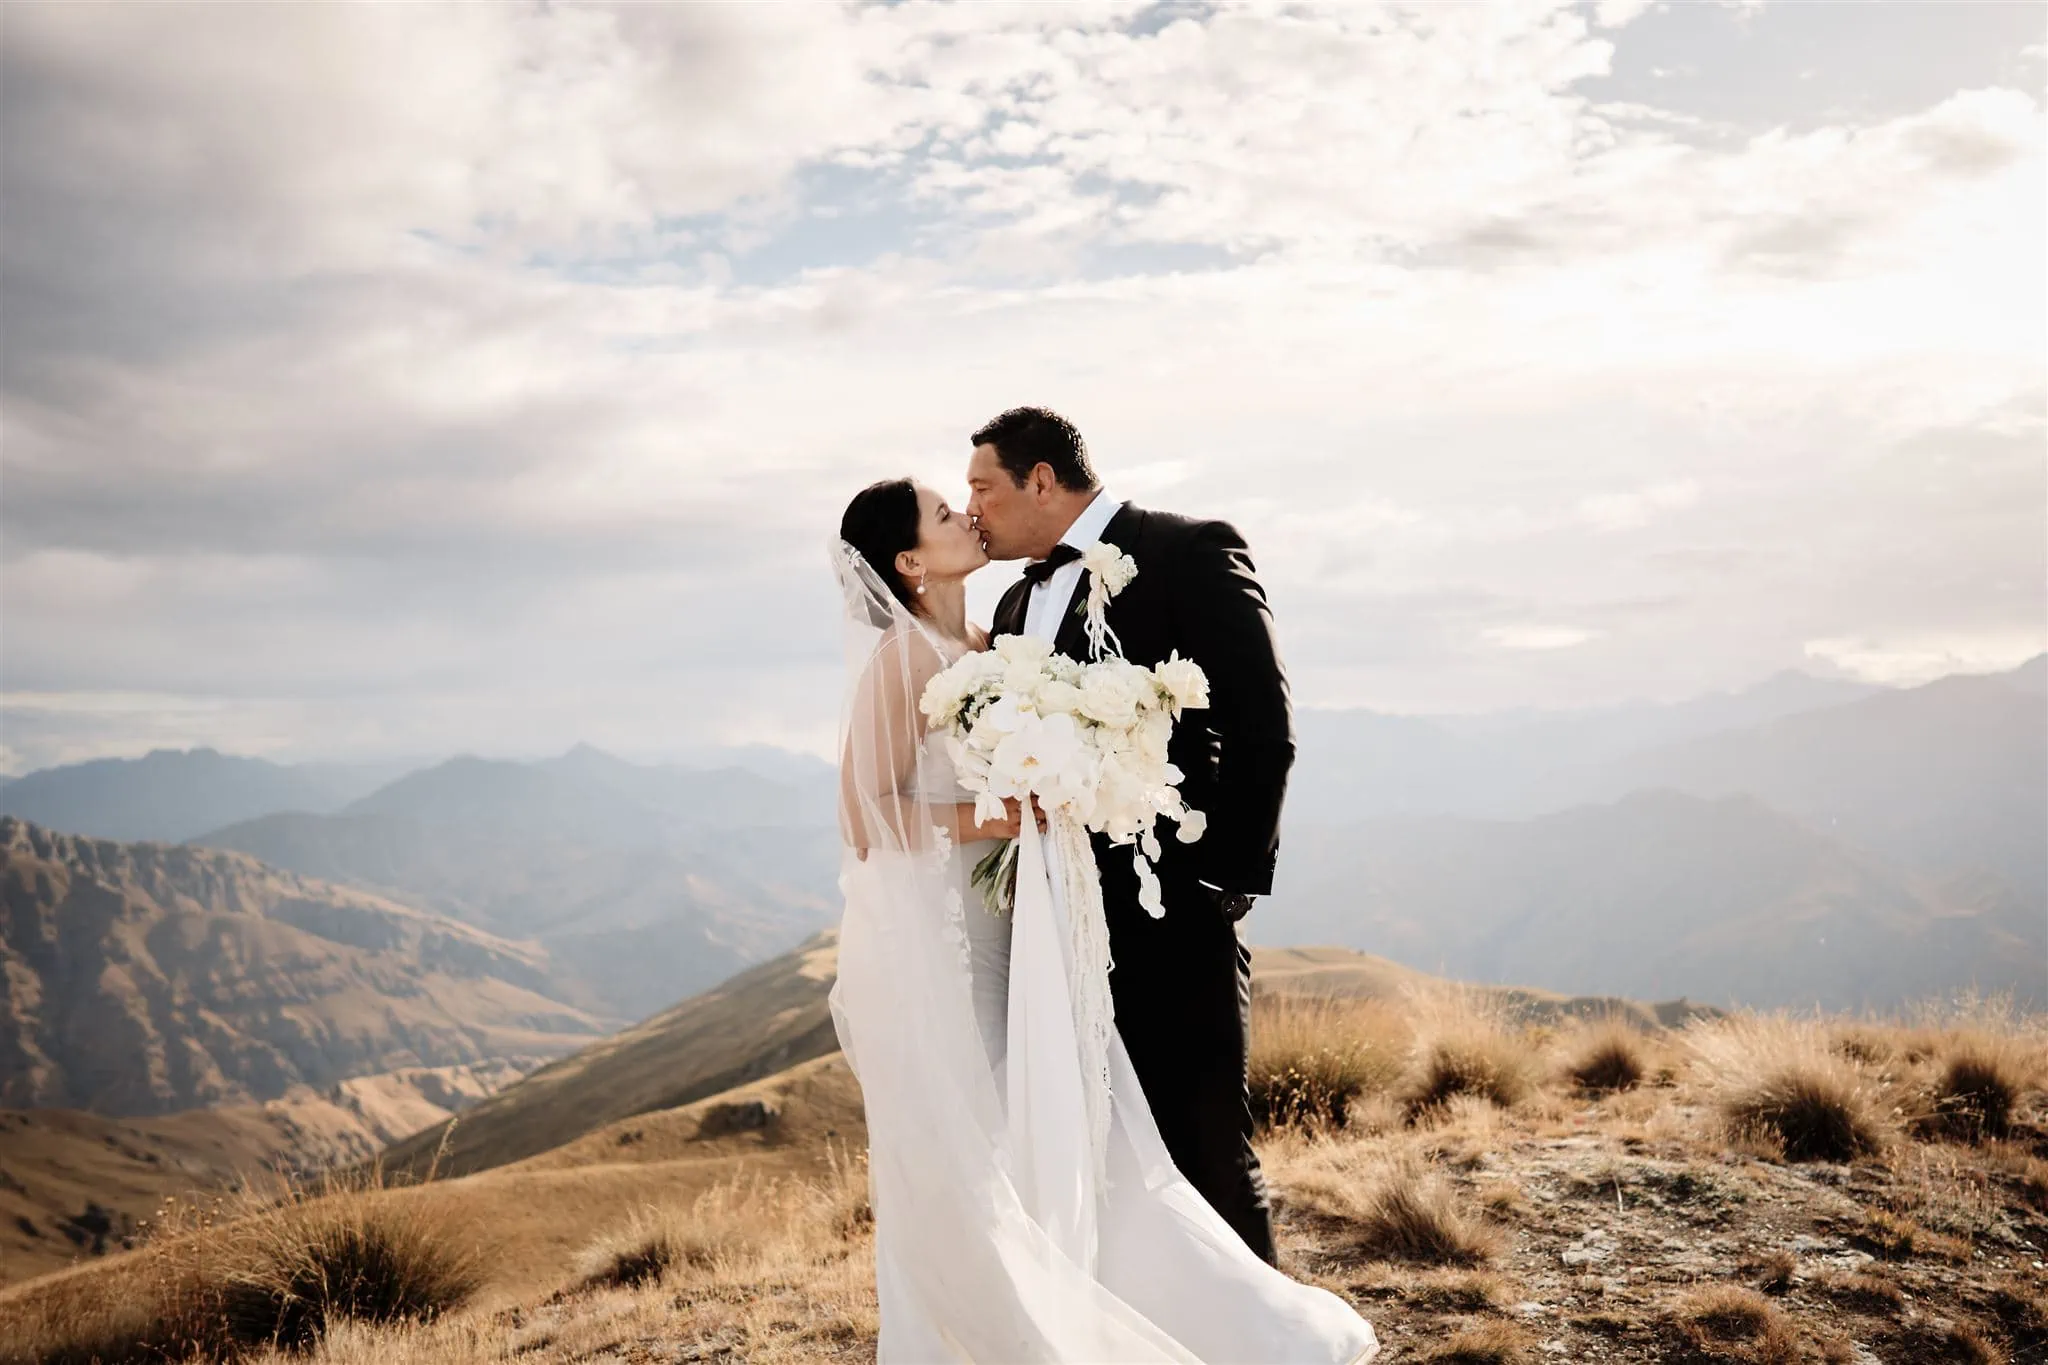 Queenstown New Zealand Elopement Wedding Photographer - A bride and groom kissing on top of Vanguard Peak in New Zealand